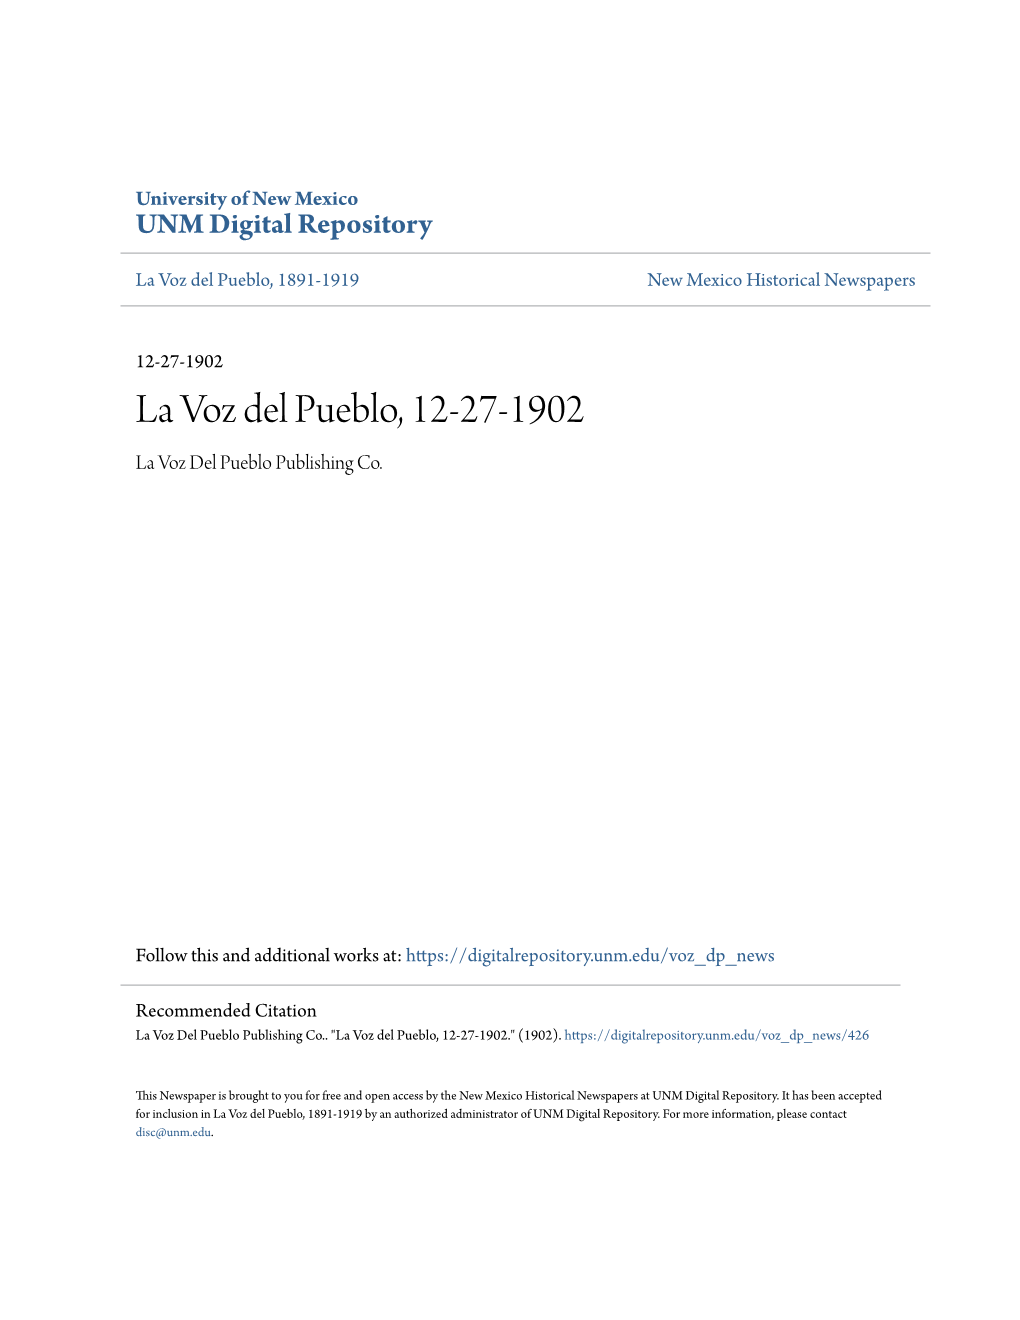 La Voz Del Pueblo, 12-27-1902 La Voz Del Pueblo Publishing Co